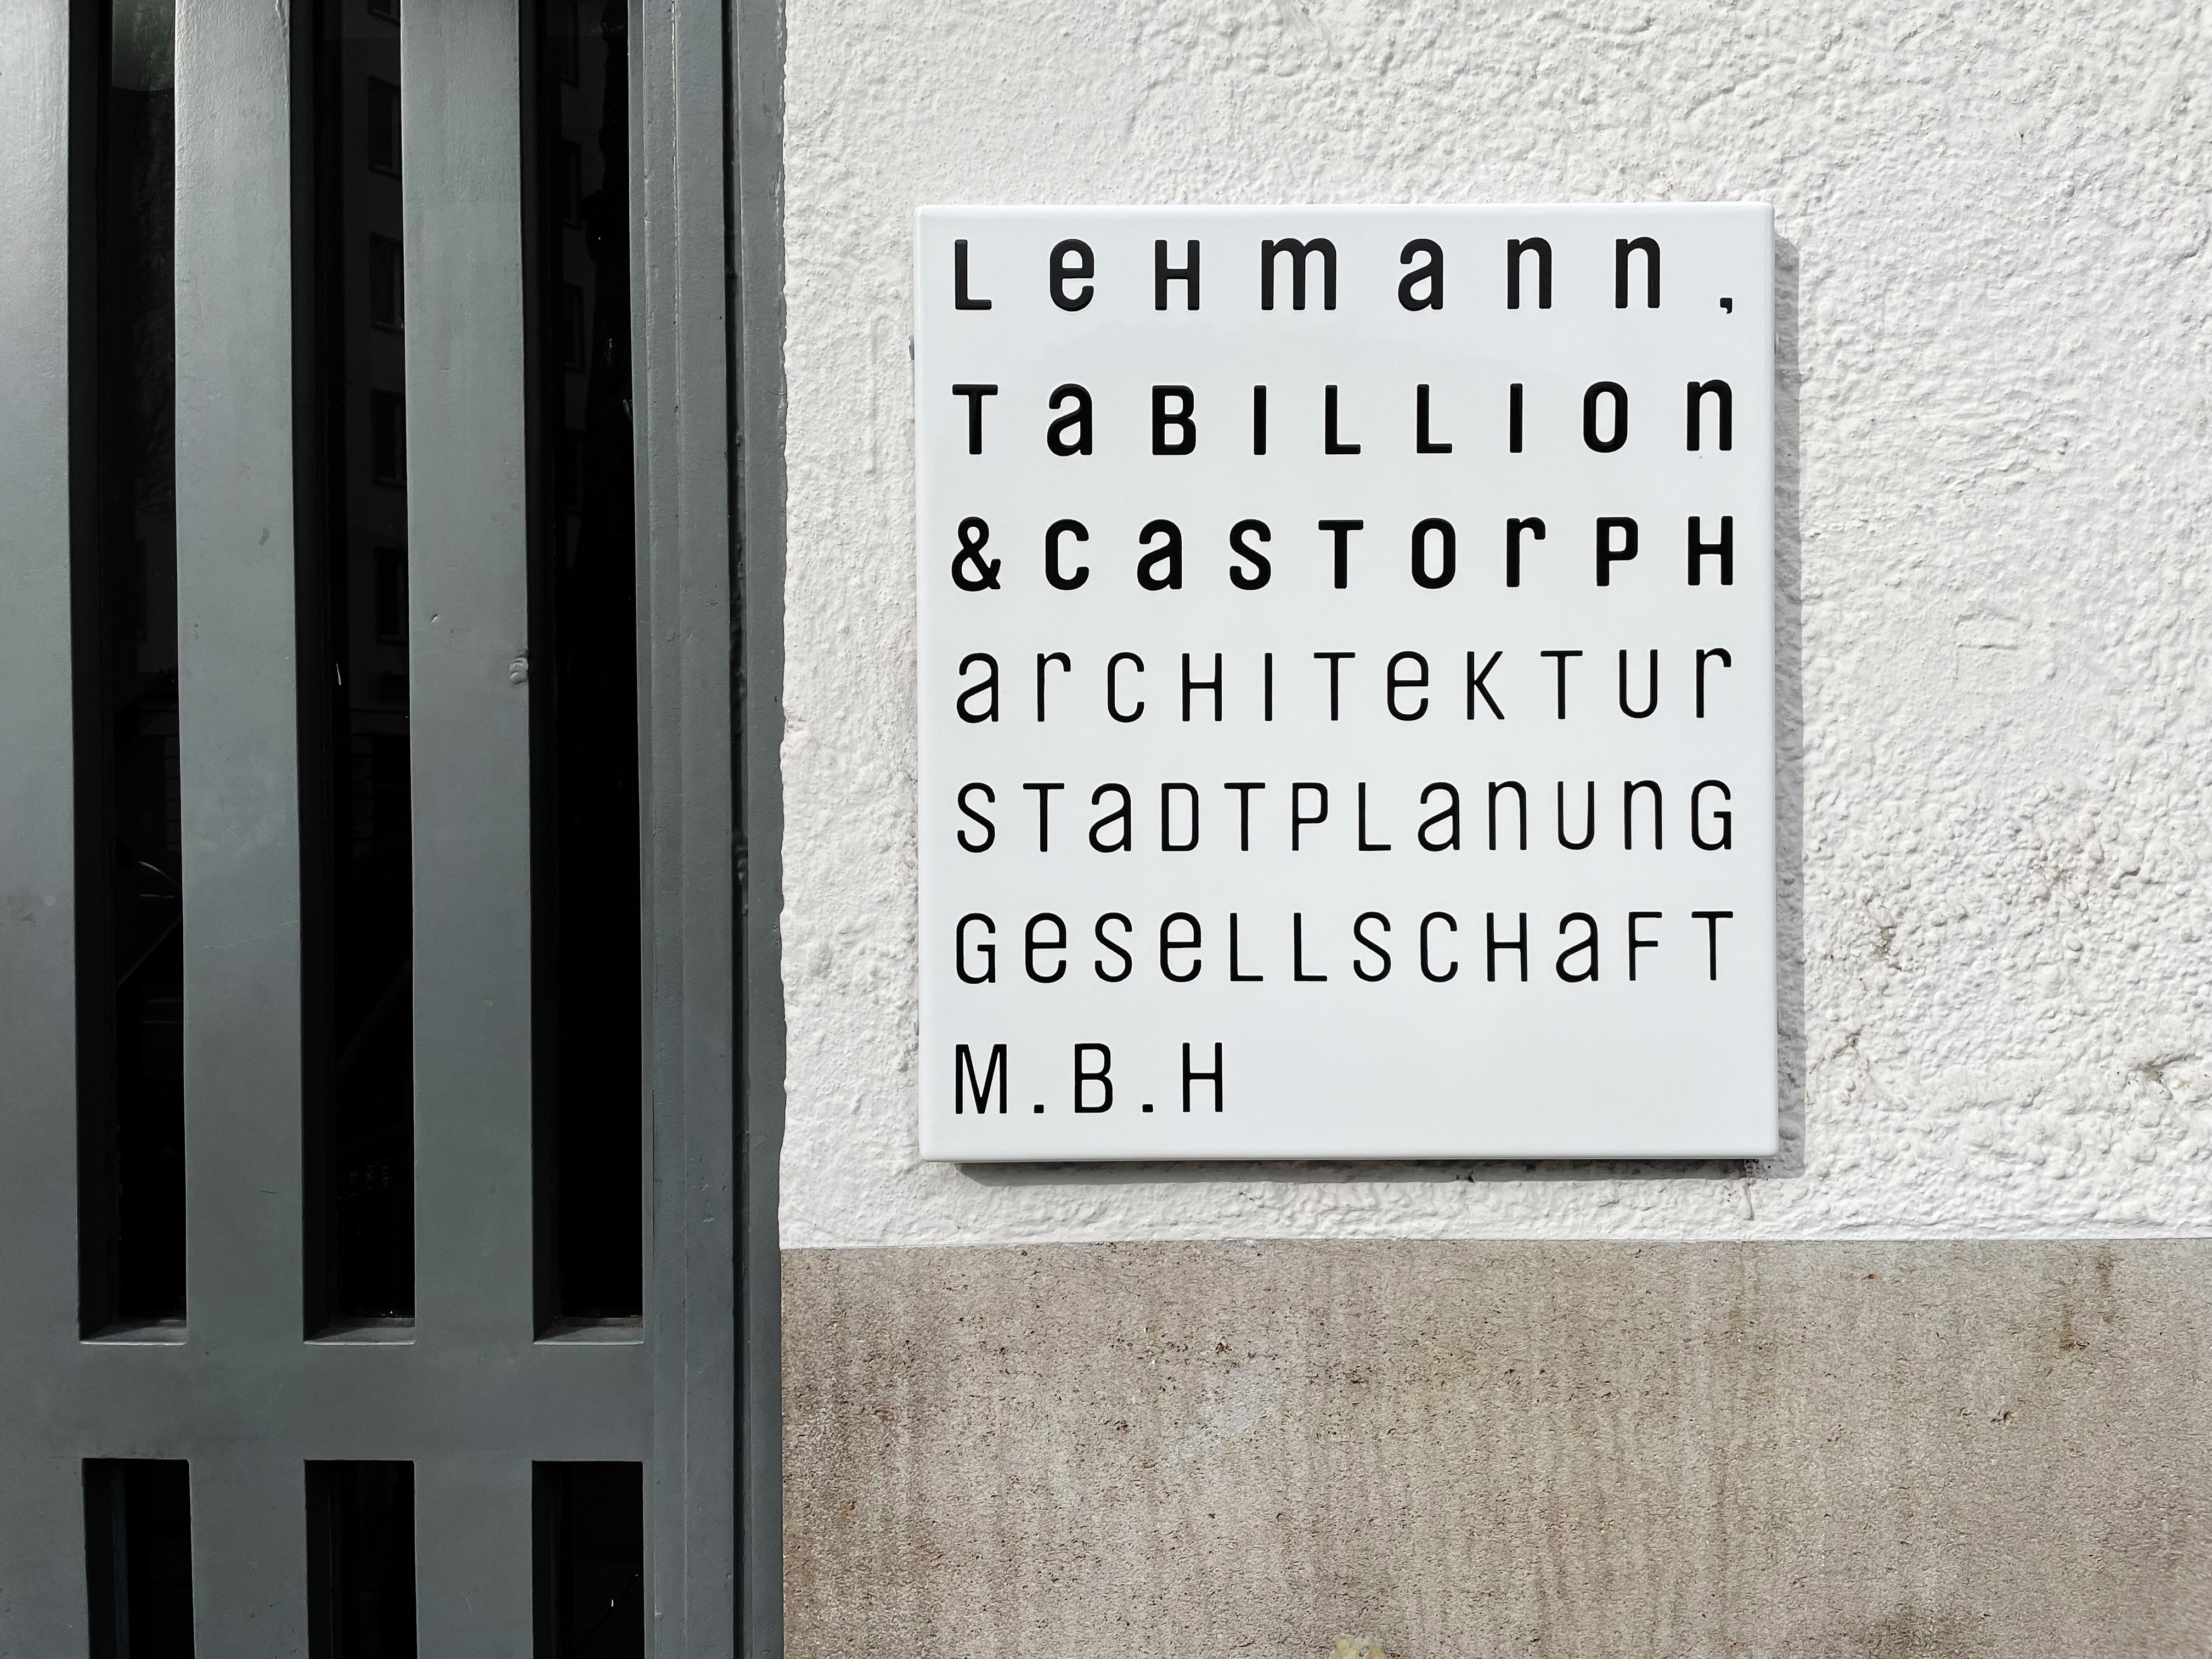 Lehmann Tabillion Castorph Archiektur Goetheplatz Lindwurmstraße Schild